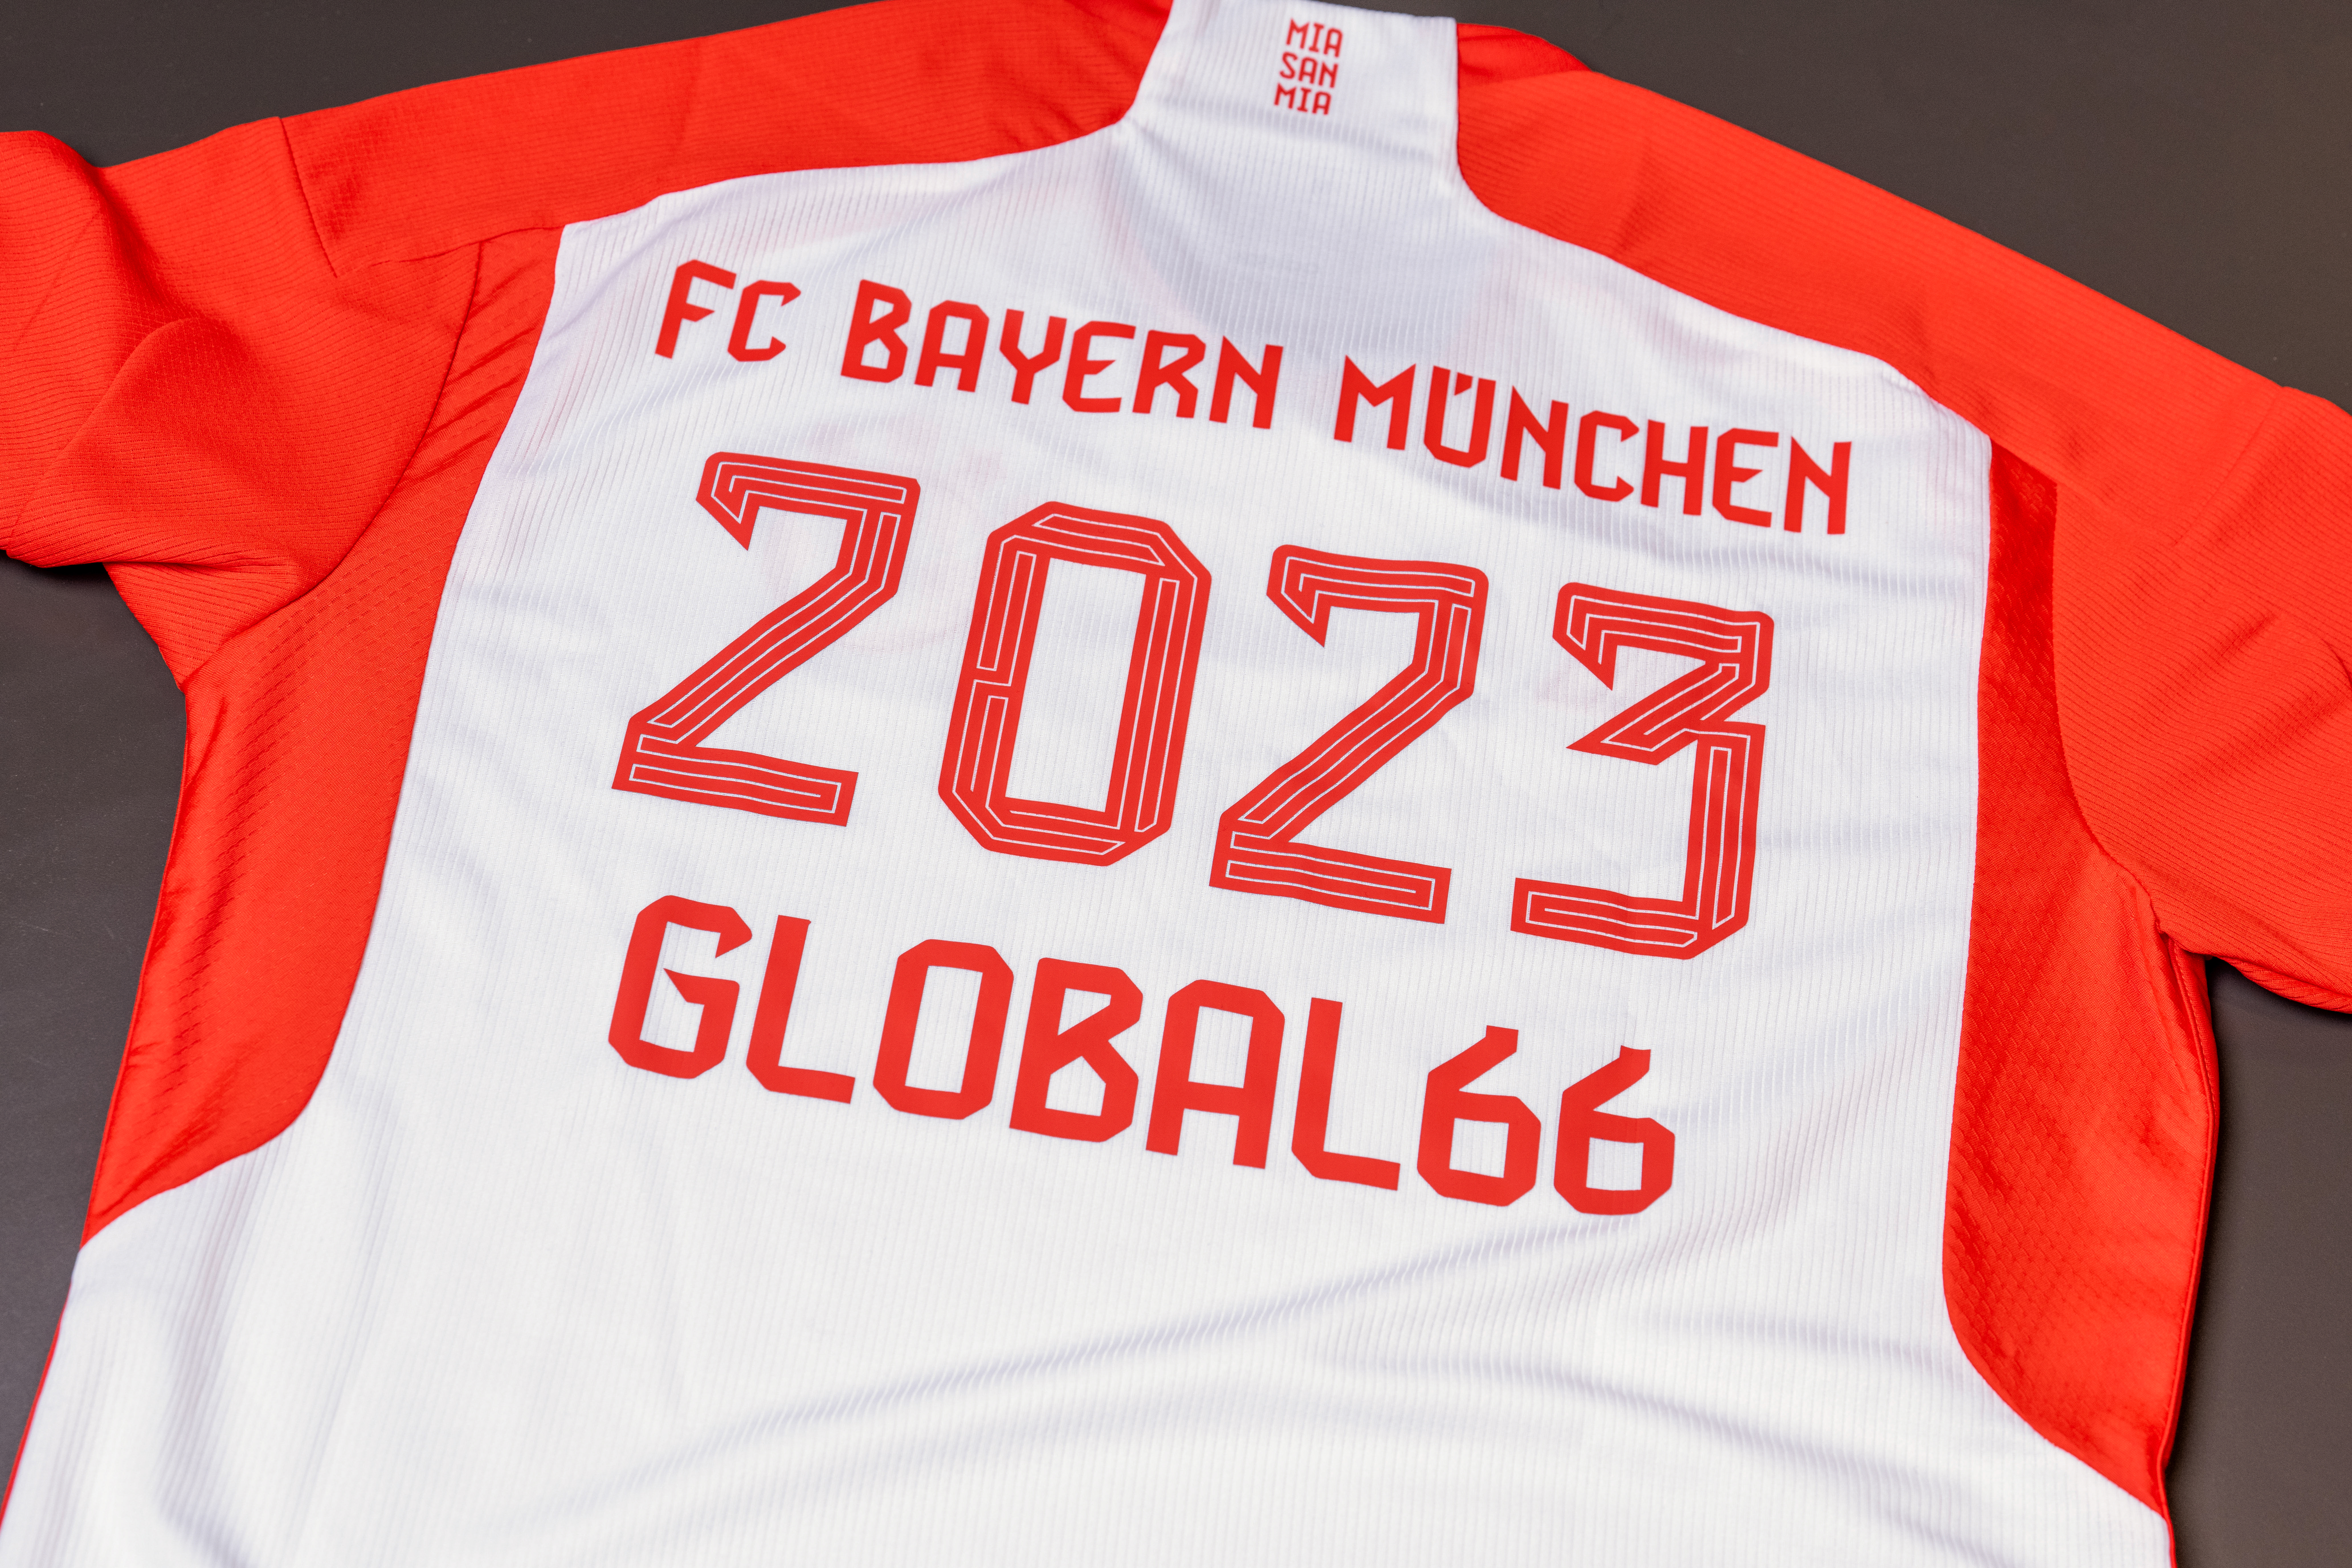 Alianza entre Global66 y Bayern Munich promete descubrir jóvenes talentos del fútbol en el país